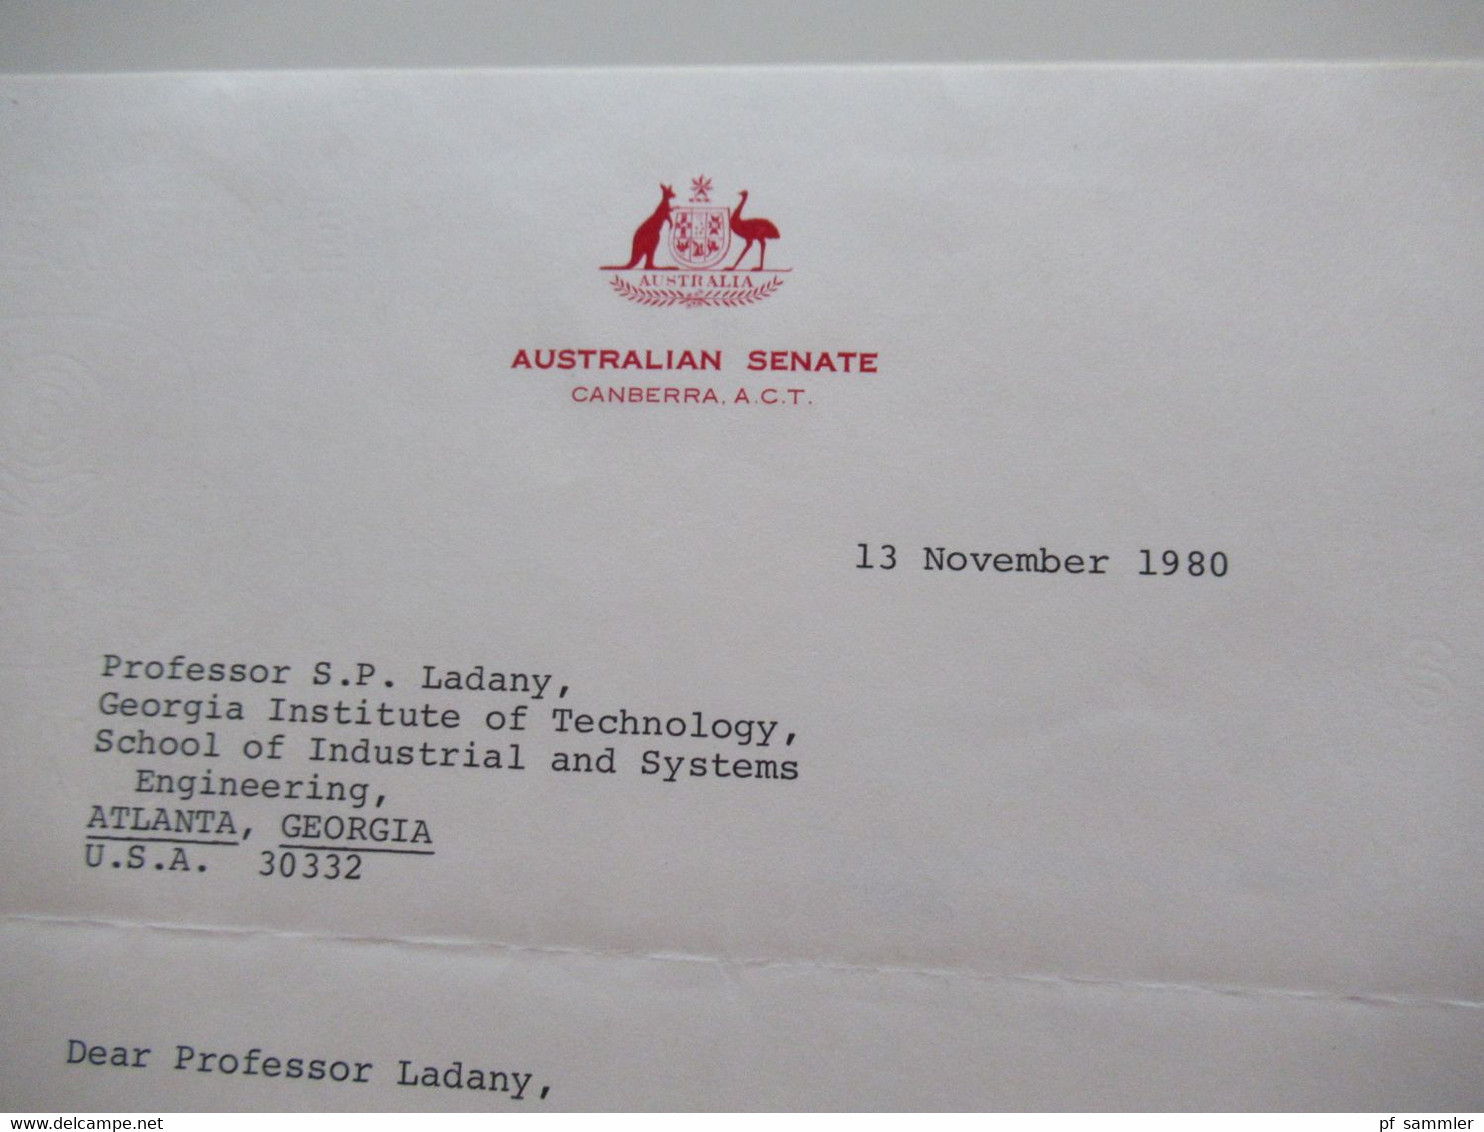 Australien 1980 Air Mail Umschlag Australian Senate Stempel Postage Paid Parliament House ACT 2600 mit Inhalt